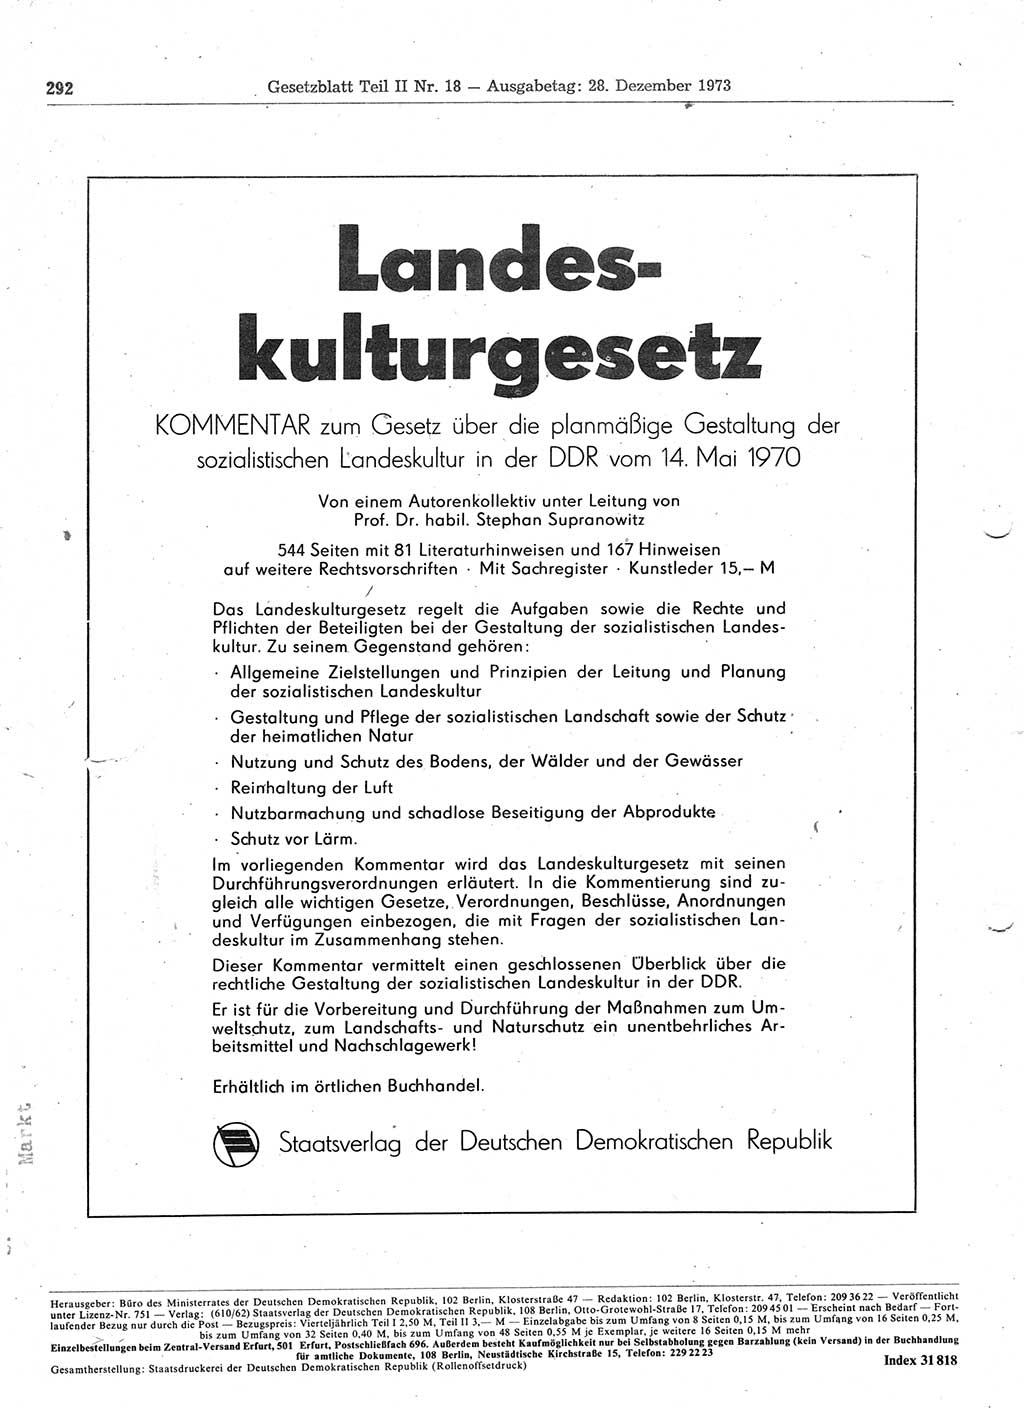 Gesetzblatt (GBl.) der Deutschen Demokratischen Republik (DDR) Teil ⅠⅠ 1973, Seite 292 (GBl. DDR ⅠⅠ 1973, S. 292)